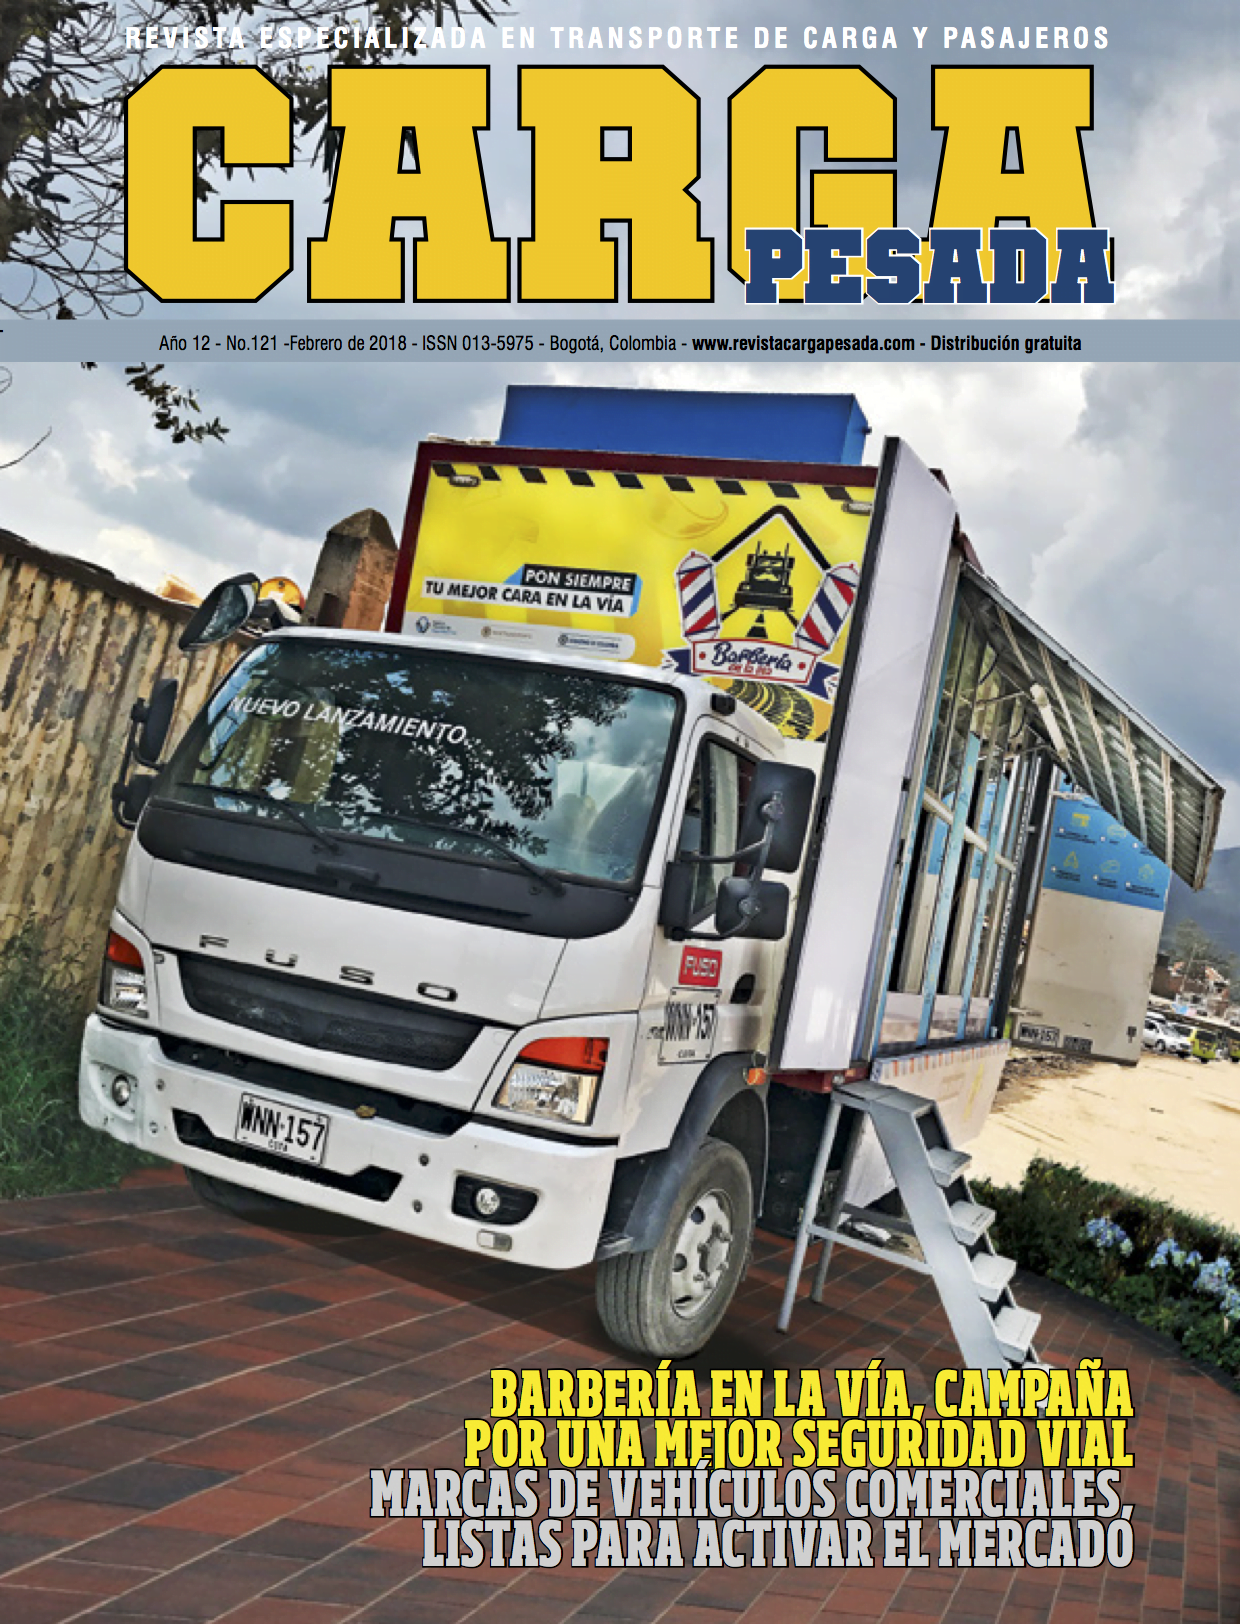 Revista carga pesada Edición 1, Marzo 2007